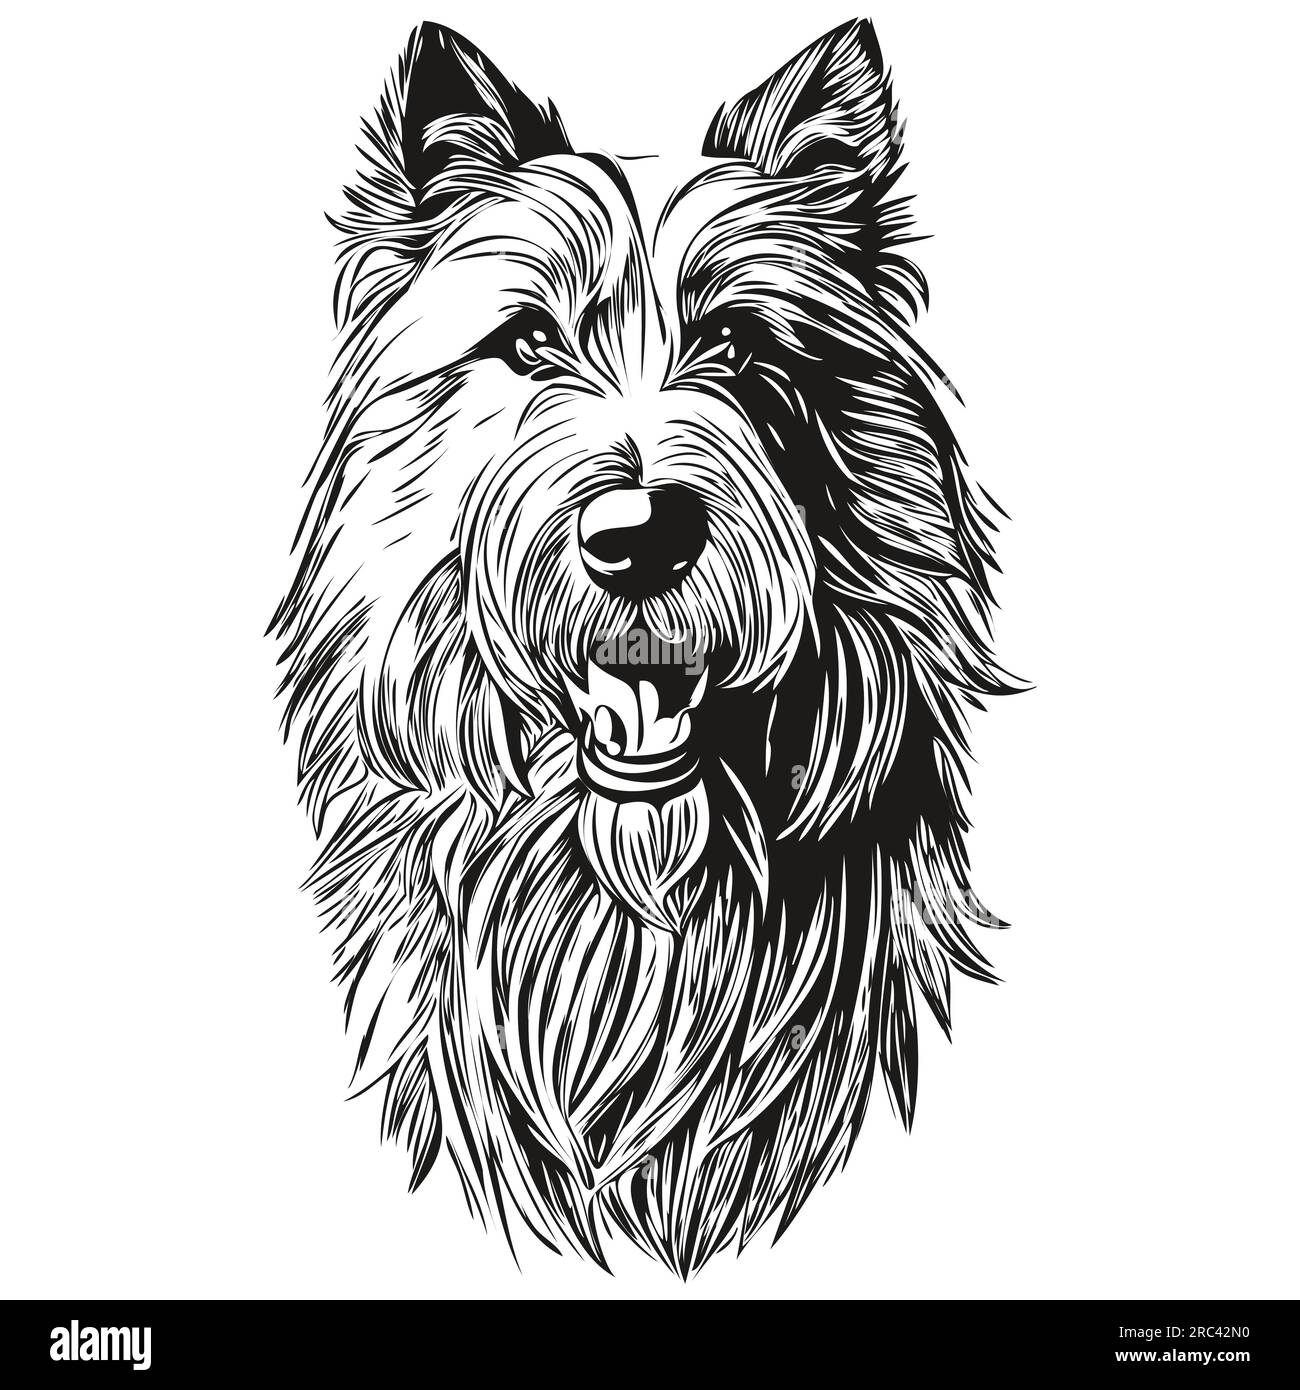 Illustration de dessin au crayon de contour de chien barbu Collie, caractère noir sur fond blanc prêt t-shirt imprimé Illustration de Vecteur